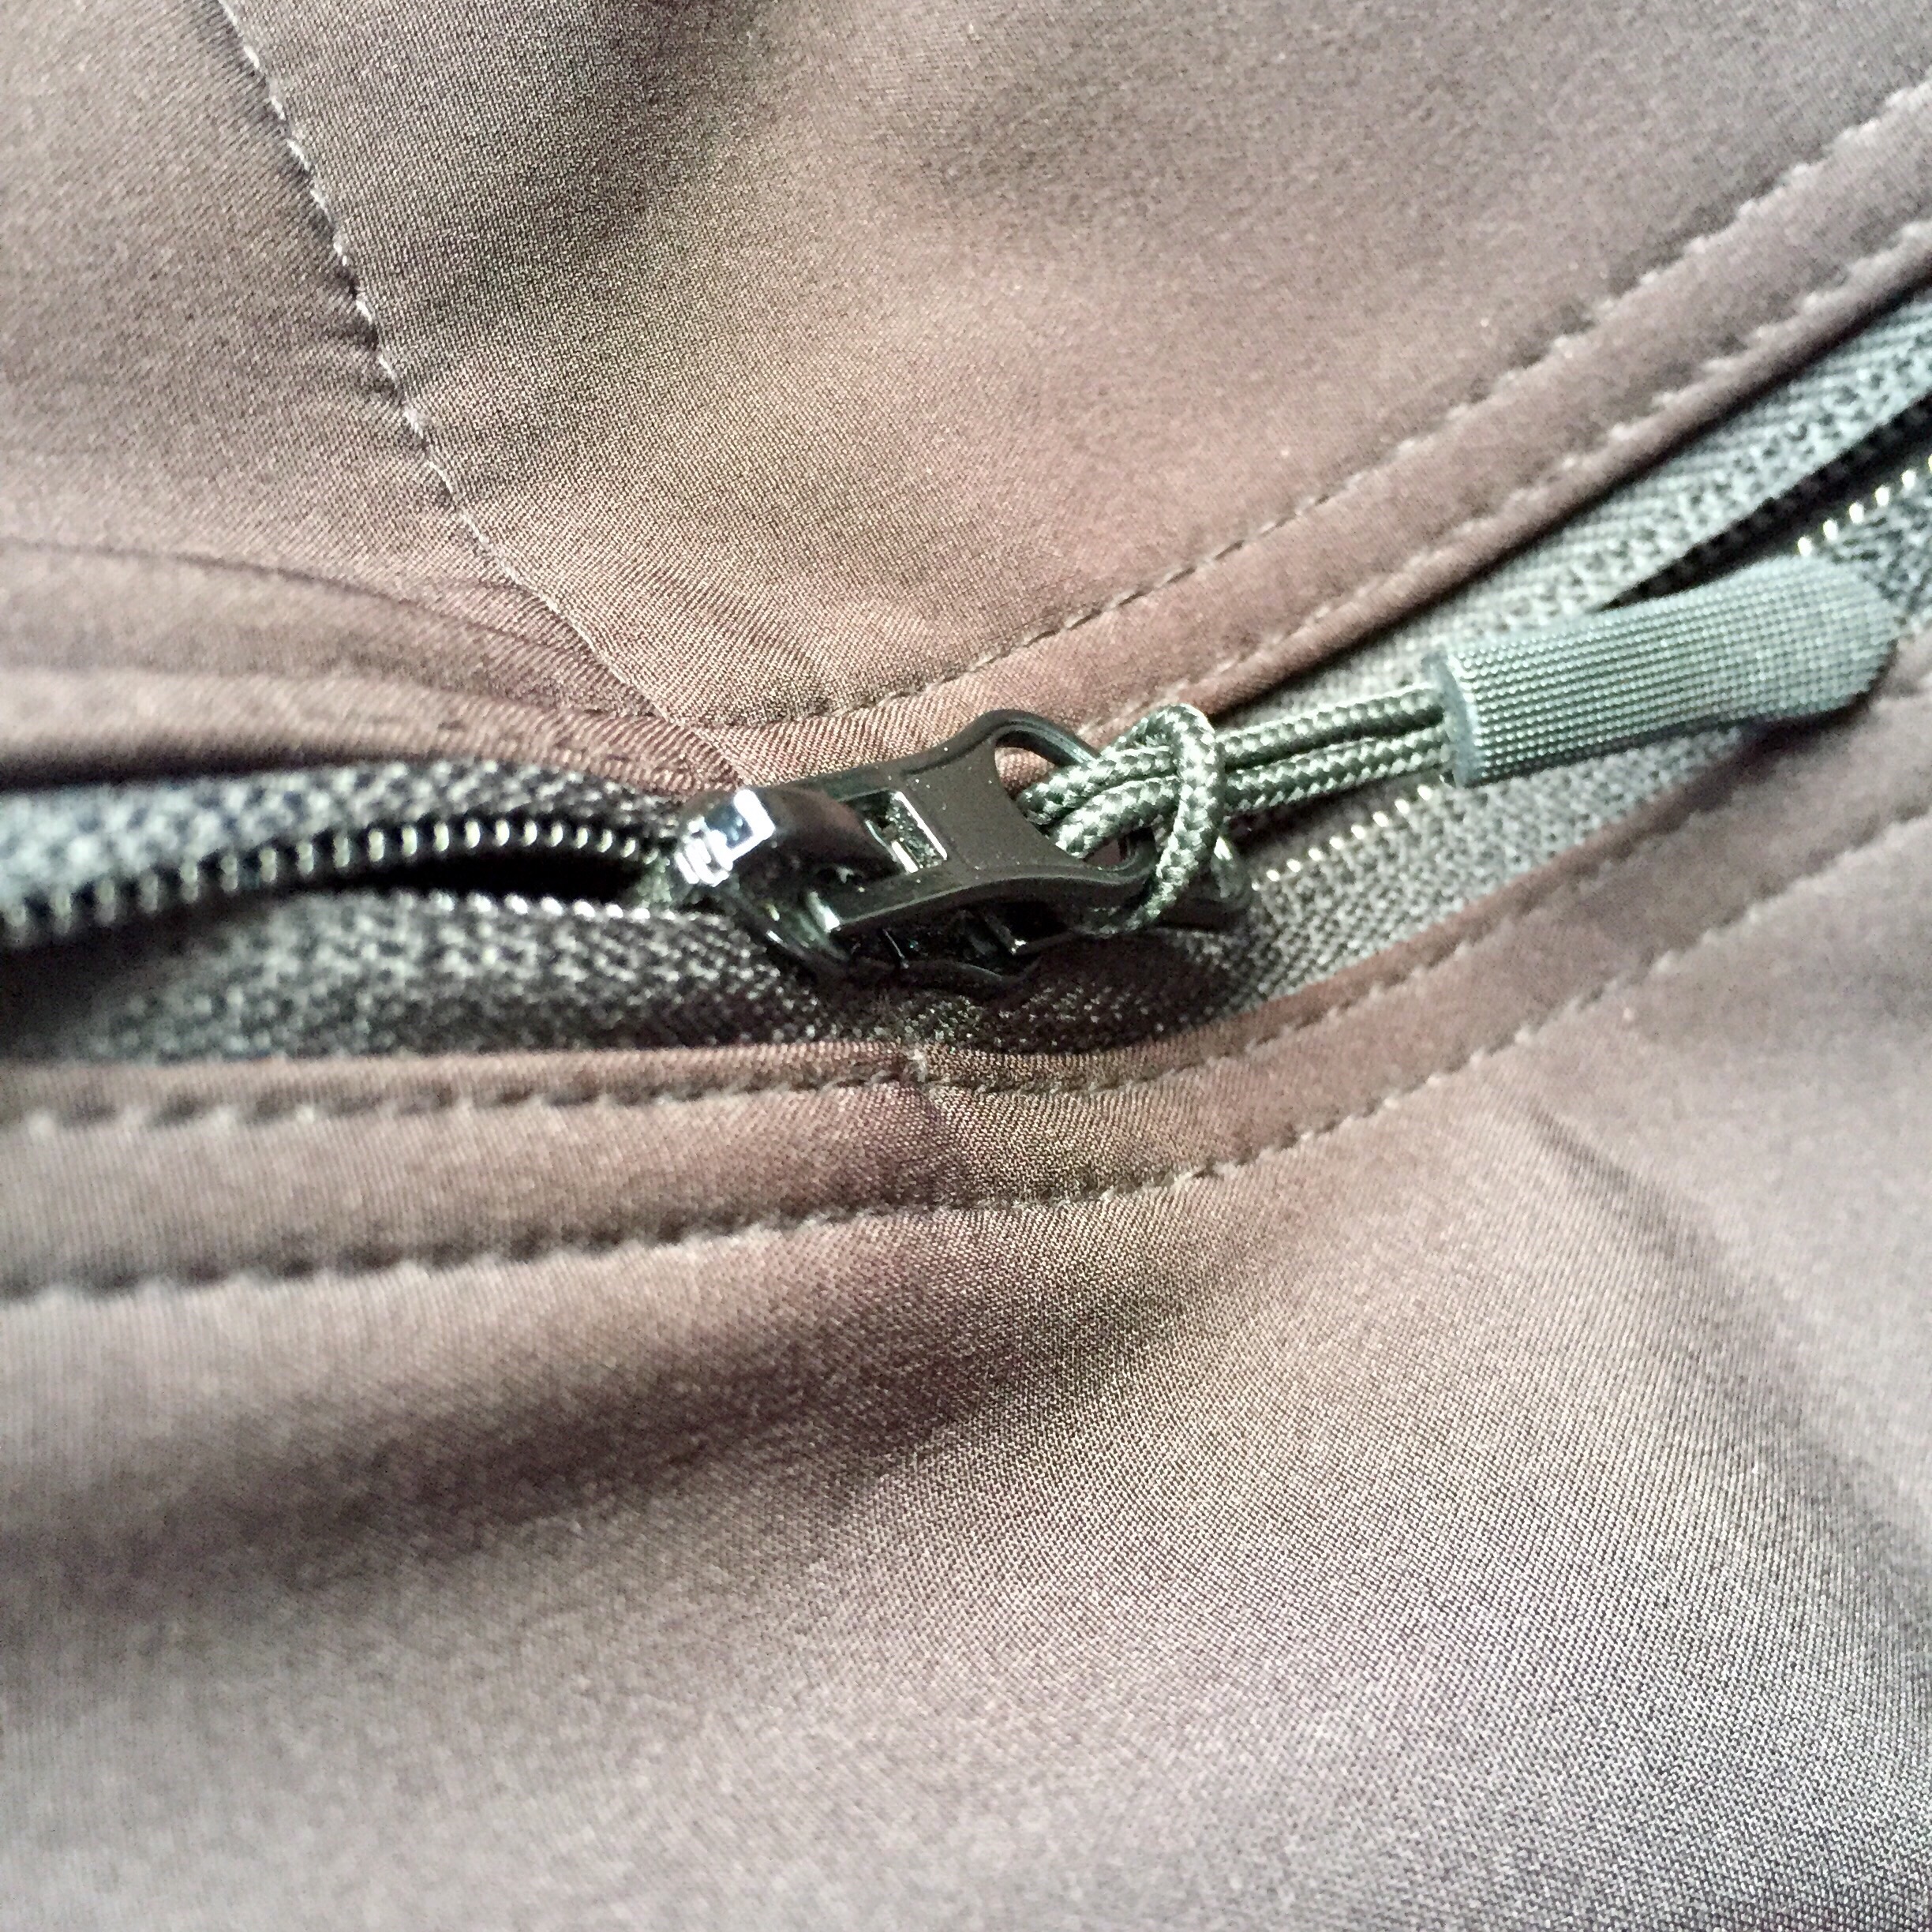 Zipper repair at sudsies